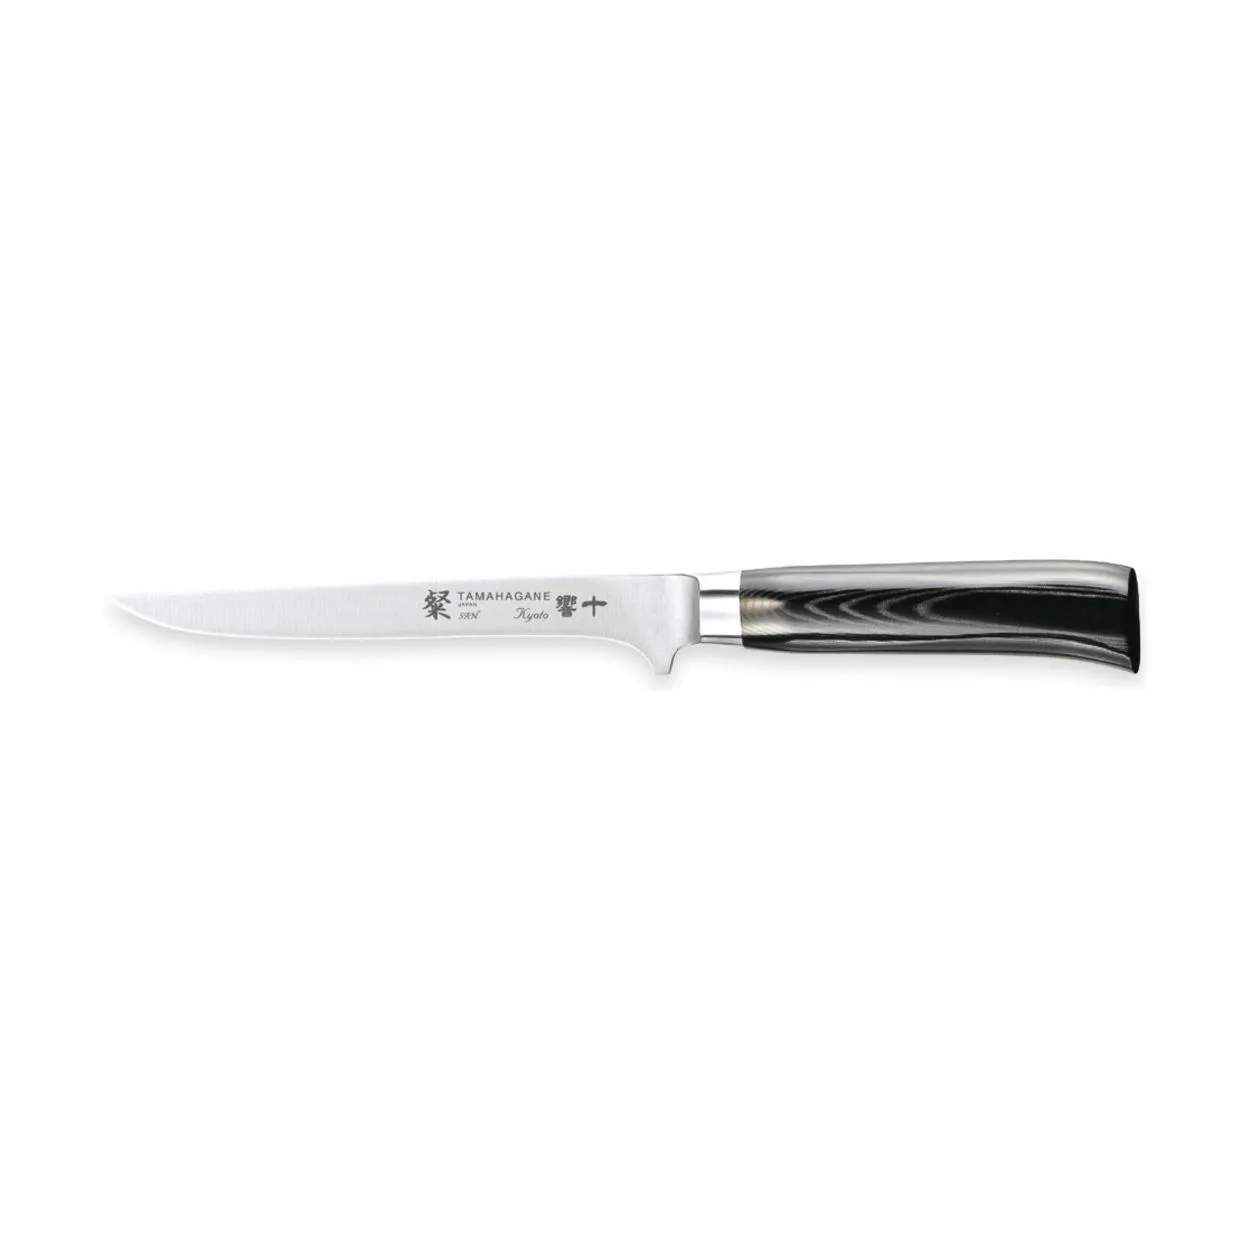 Filetkniv, sølv/sort, large